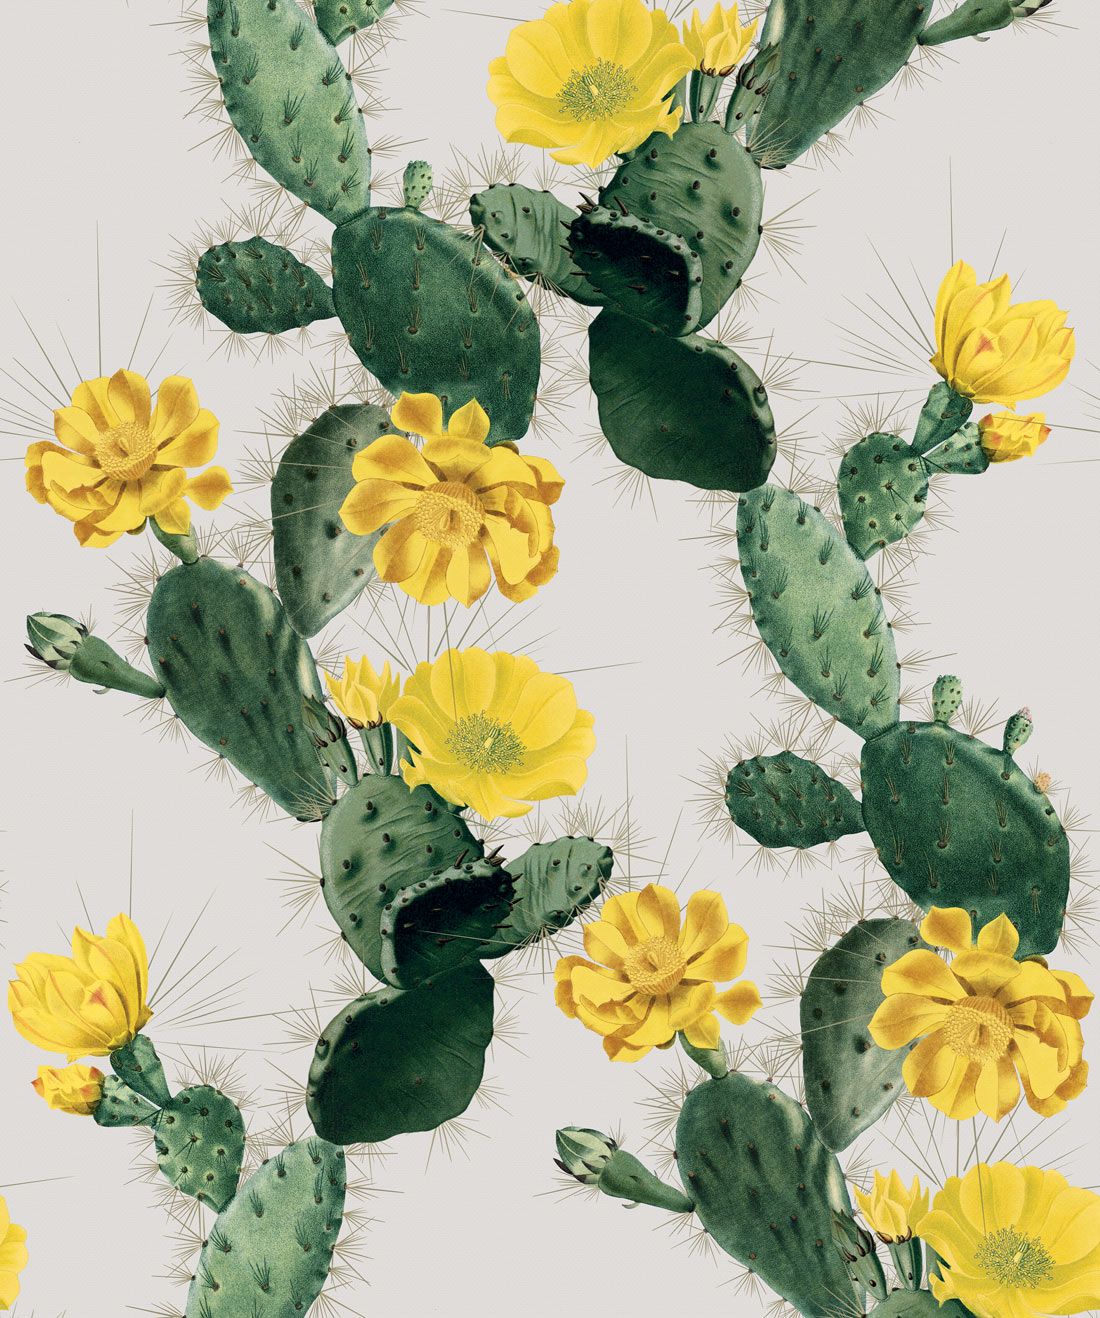 Cactus Wallpaper Images  Free Download on Freepik